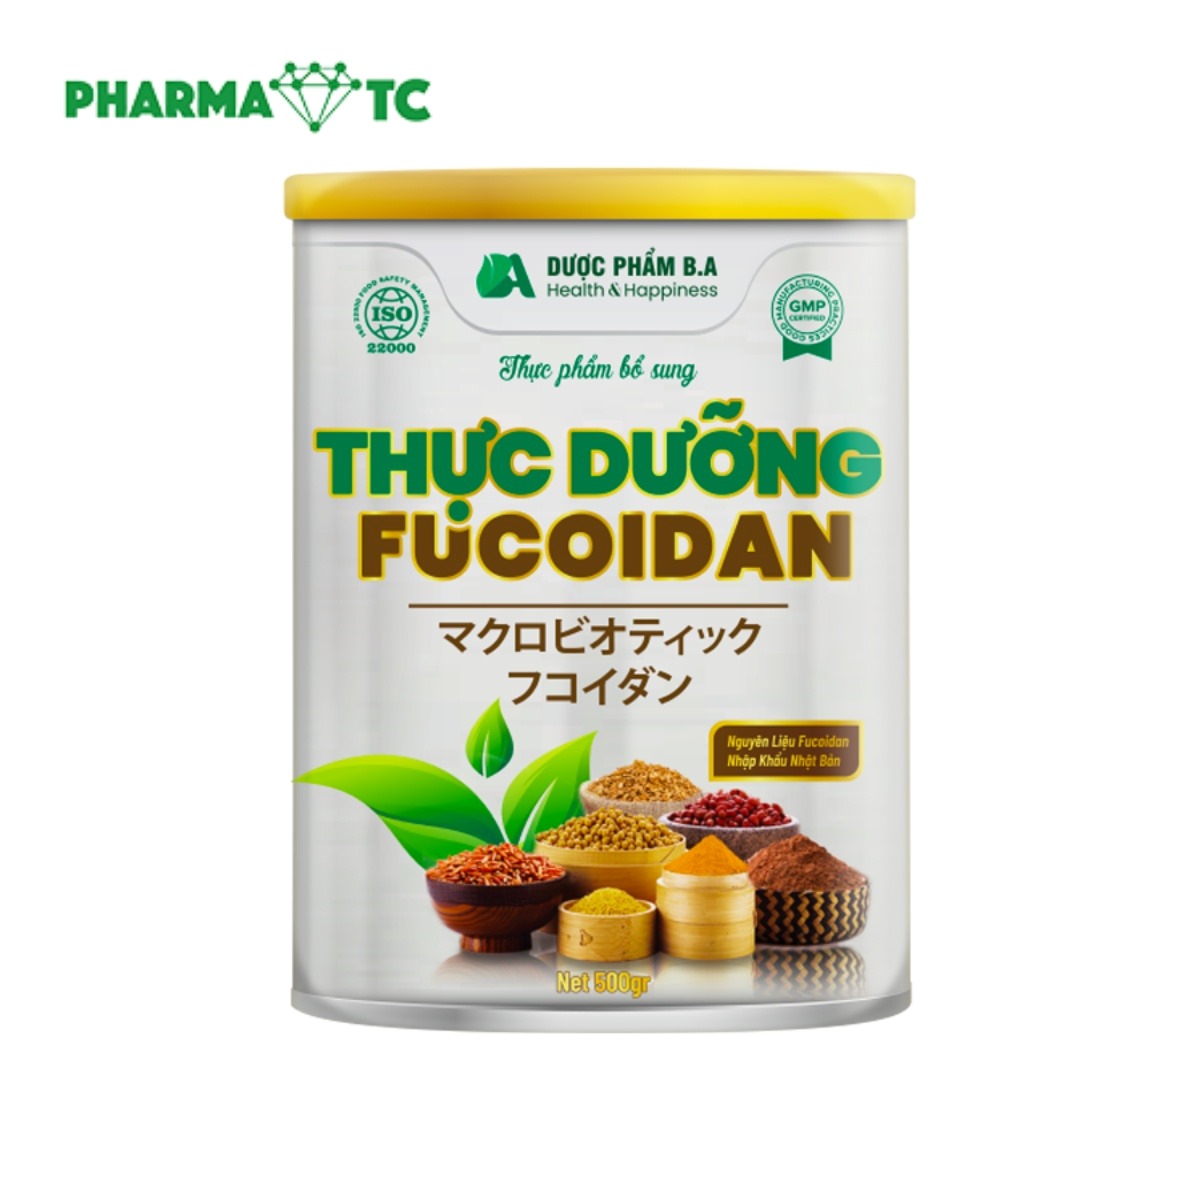 Thực dưỡng Fucoidan